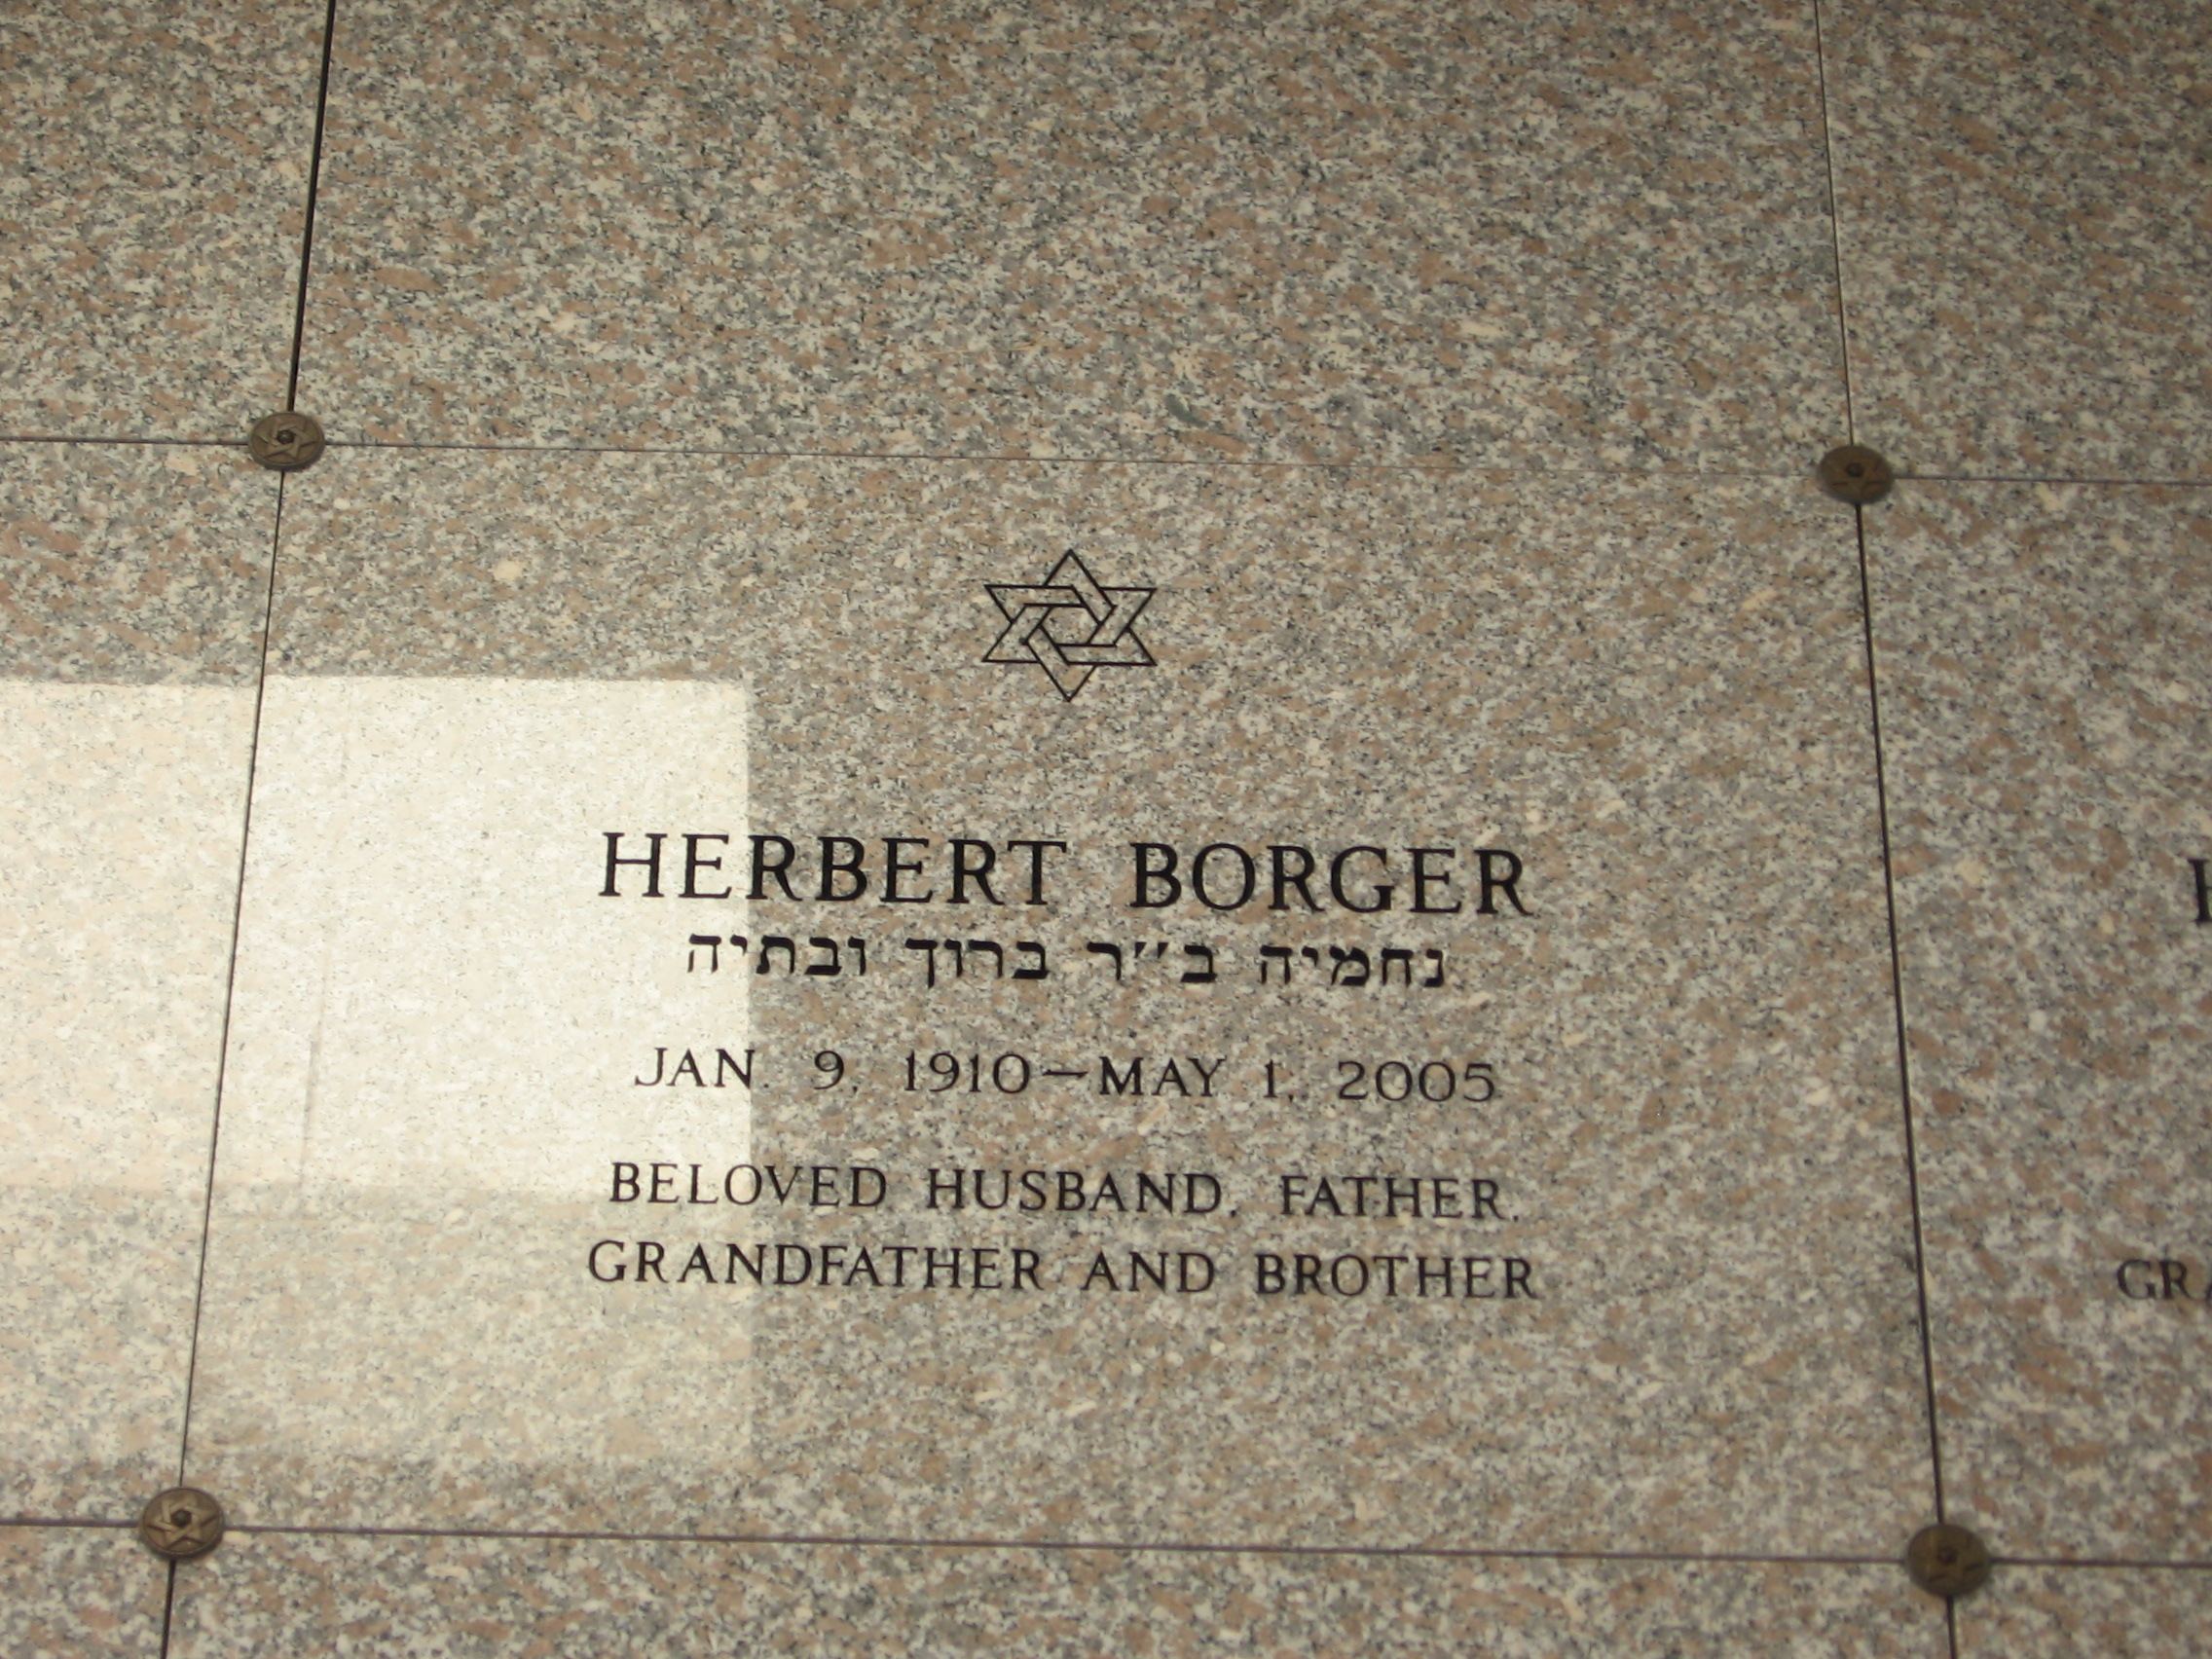 Herbert Borger